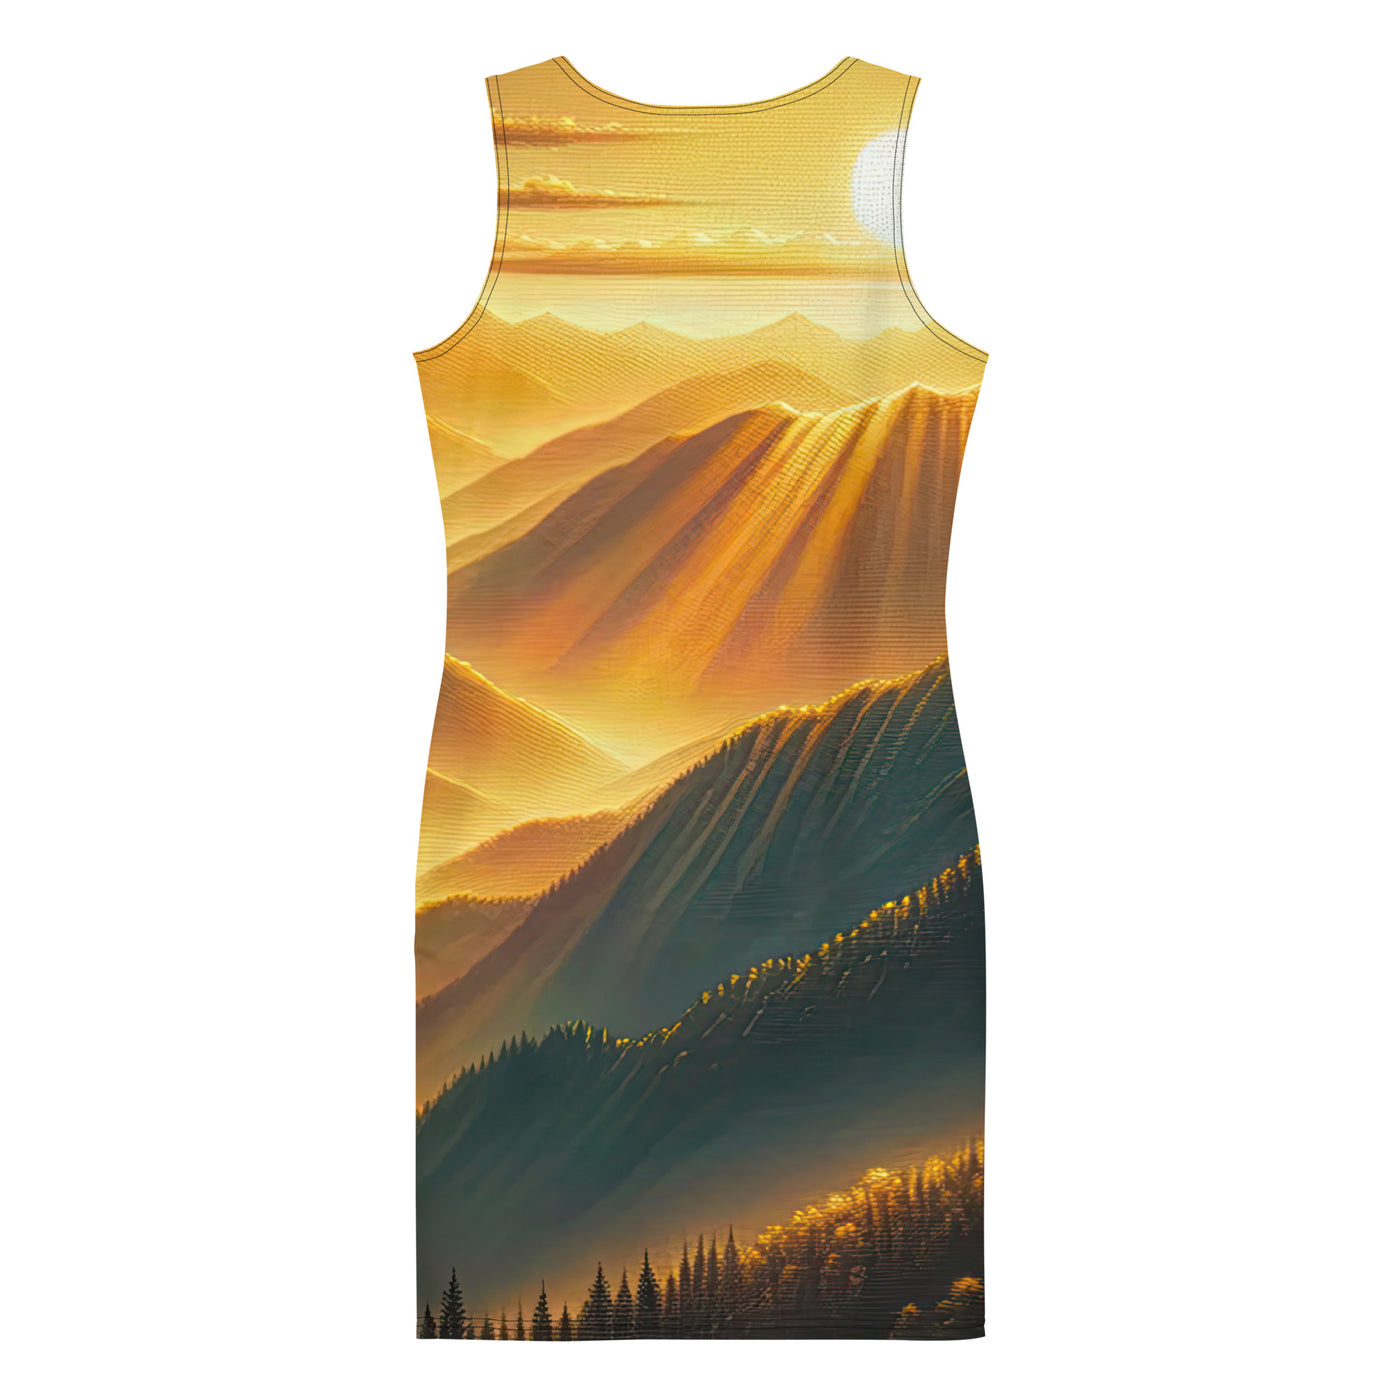 Ölgemälde der Berge in der goldenen Stunde, Sonnenuntergang über warmer Landschaft - Langes Damen Kleid (All-Over Print) berge xxx yyy zzz